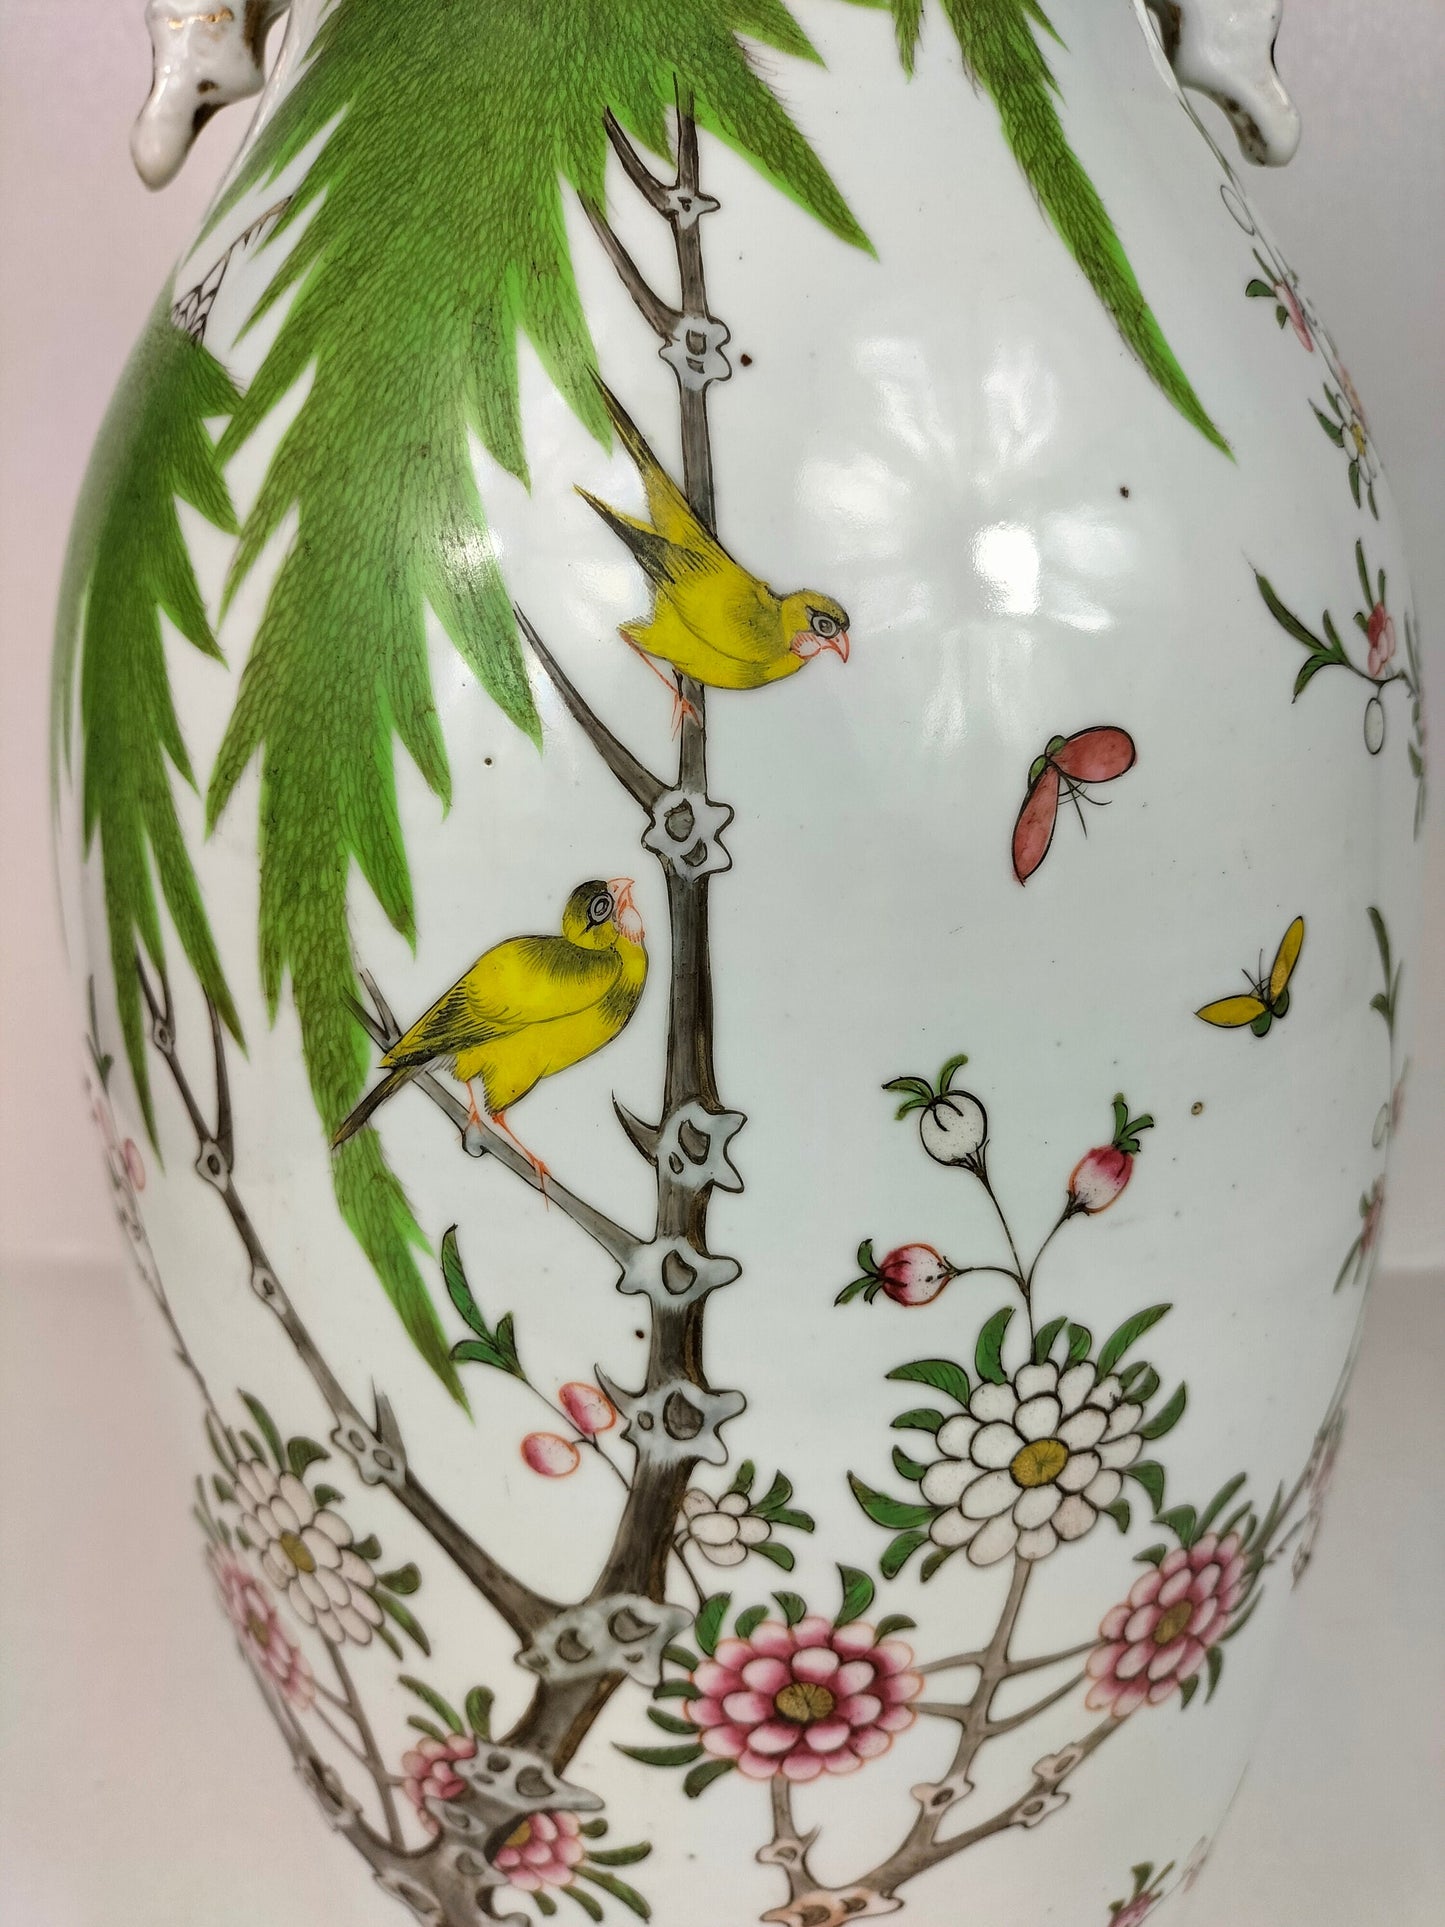 Grand vase ancien chinois famille rose à décor de fleurs et d'oiseaux // Epoque République (1912-1949)